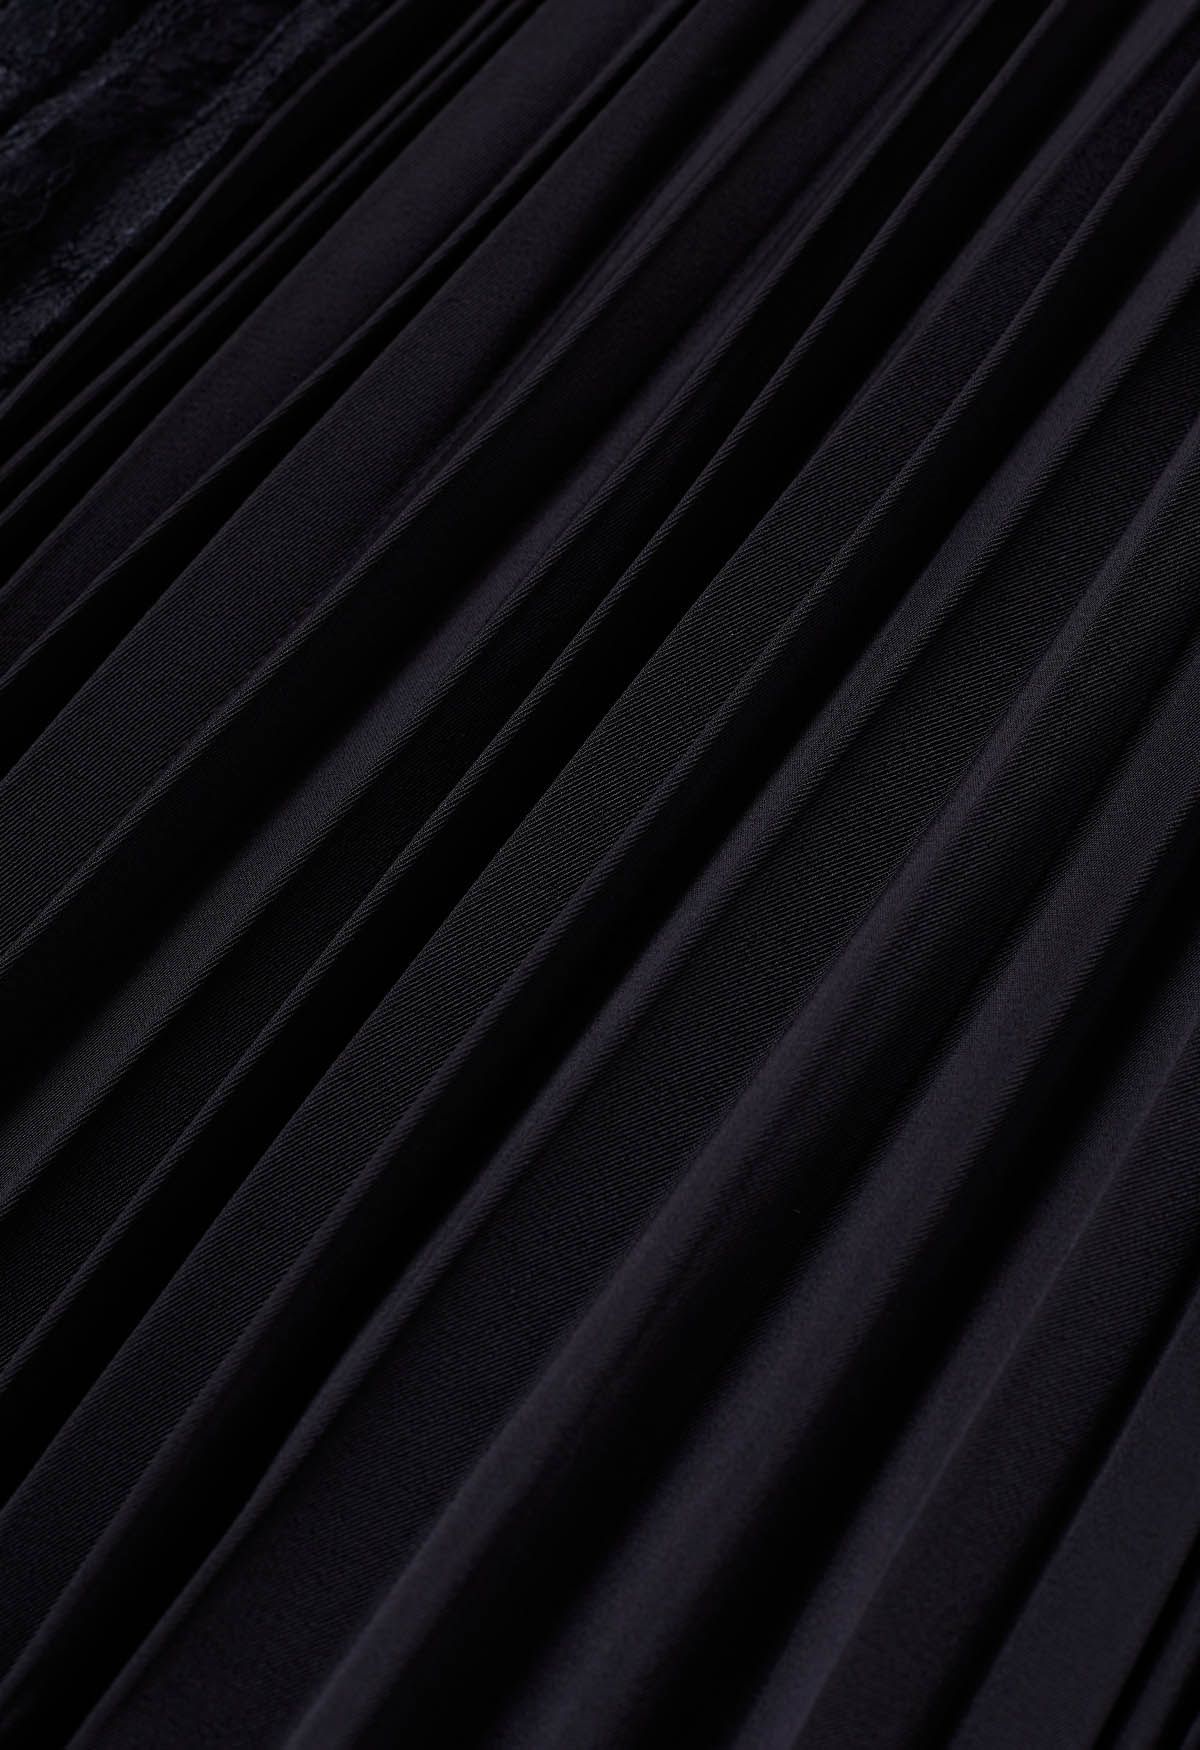 Jupe mi-longue plissée à empiècements en dentelle, noire